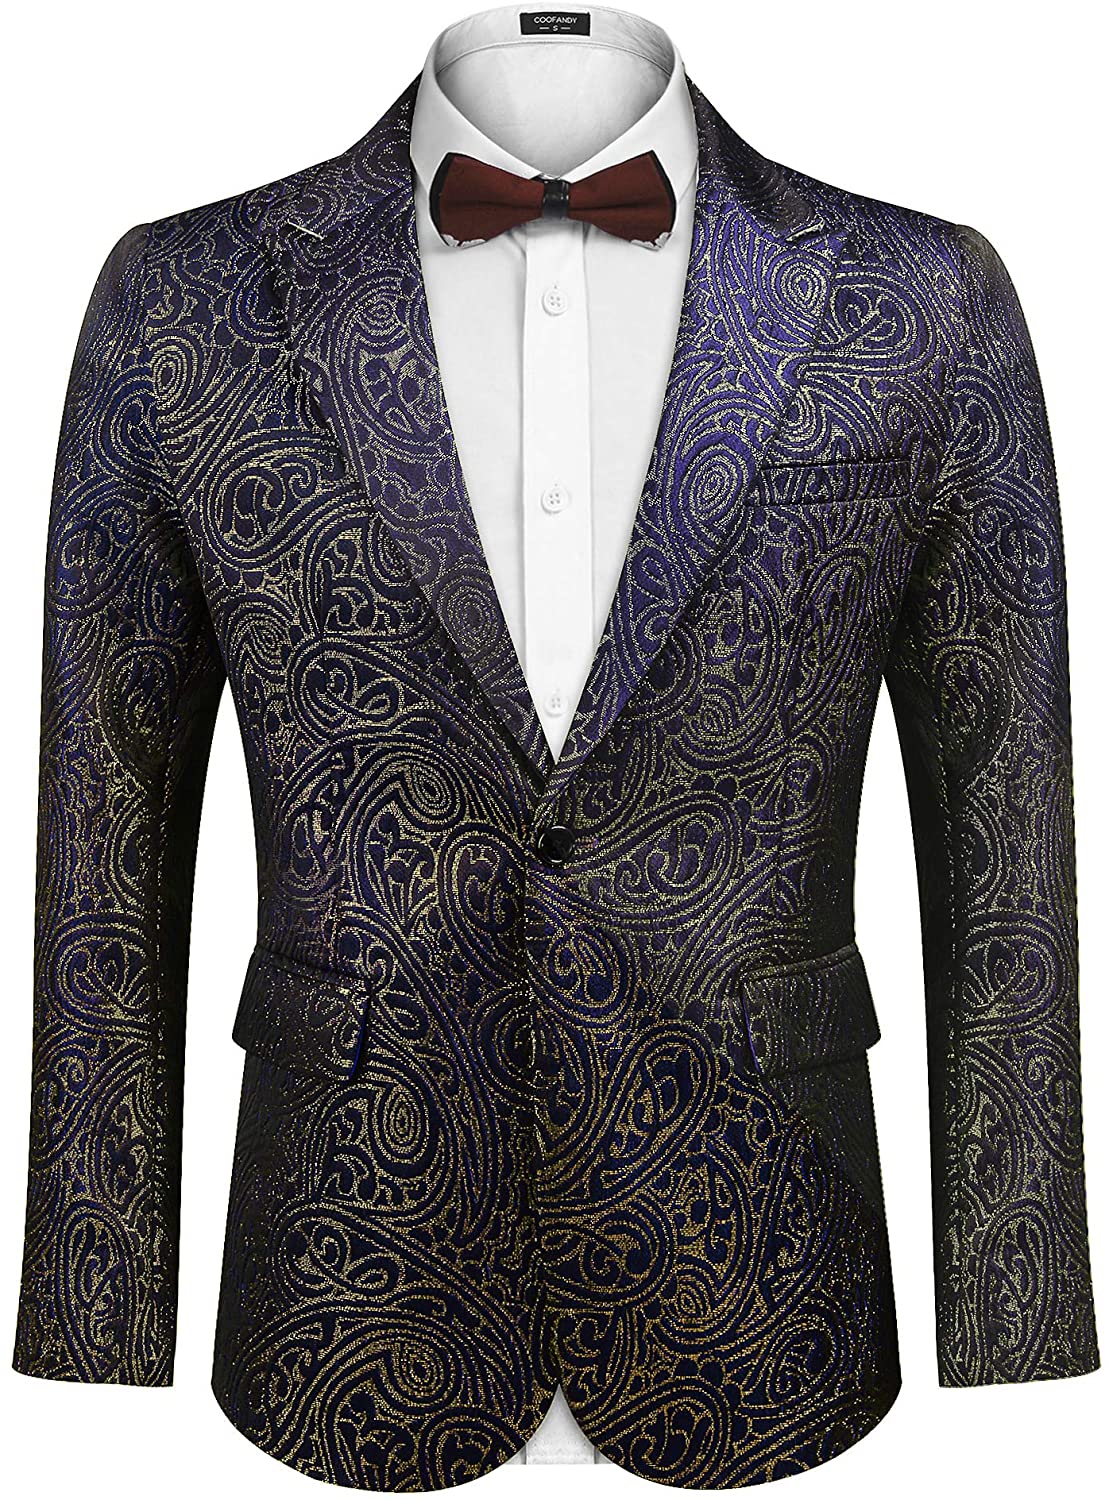 COOFANDY Men's Sequin Blazer Suit Jacket Slim Fit One Button Fashion ...